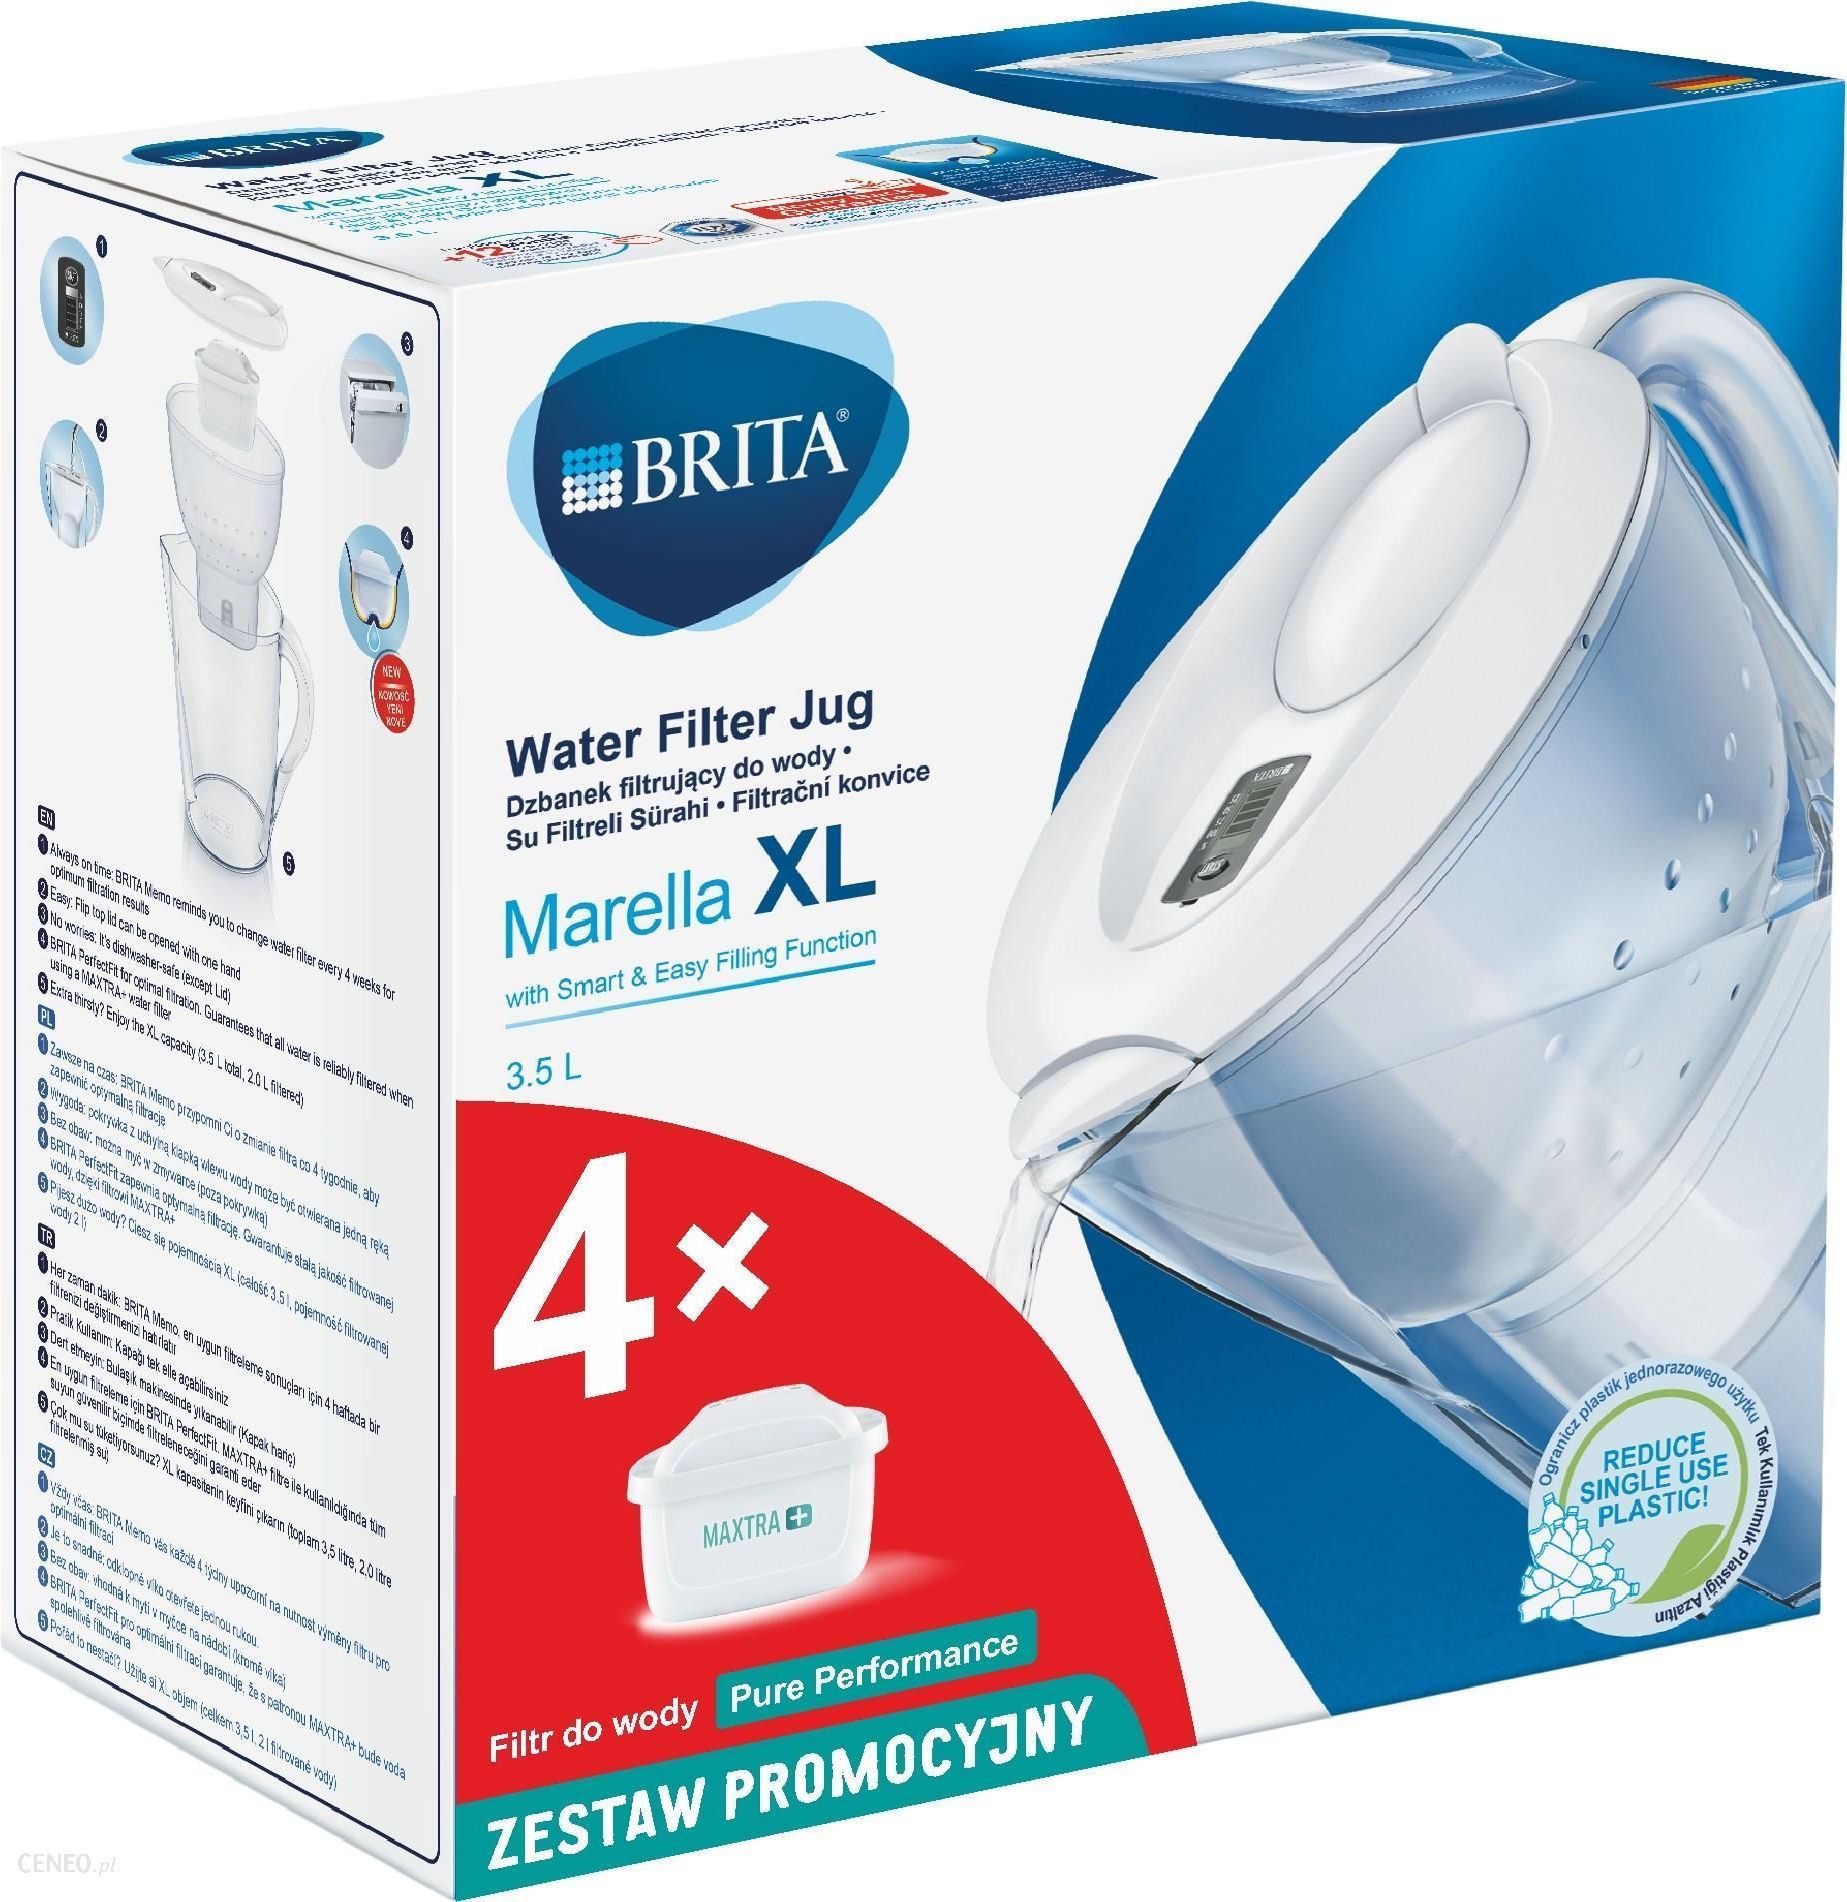 Brita Marella XL Biała + 4 filtry